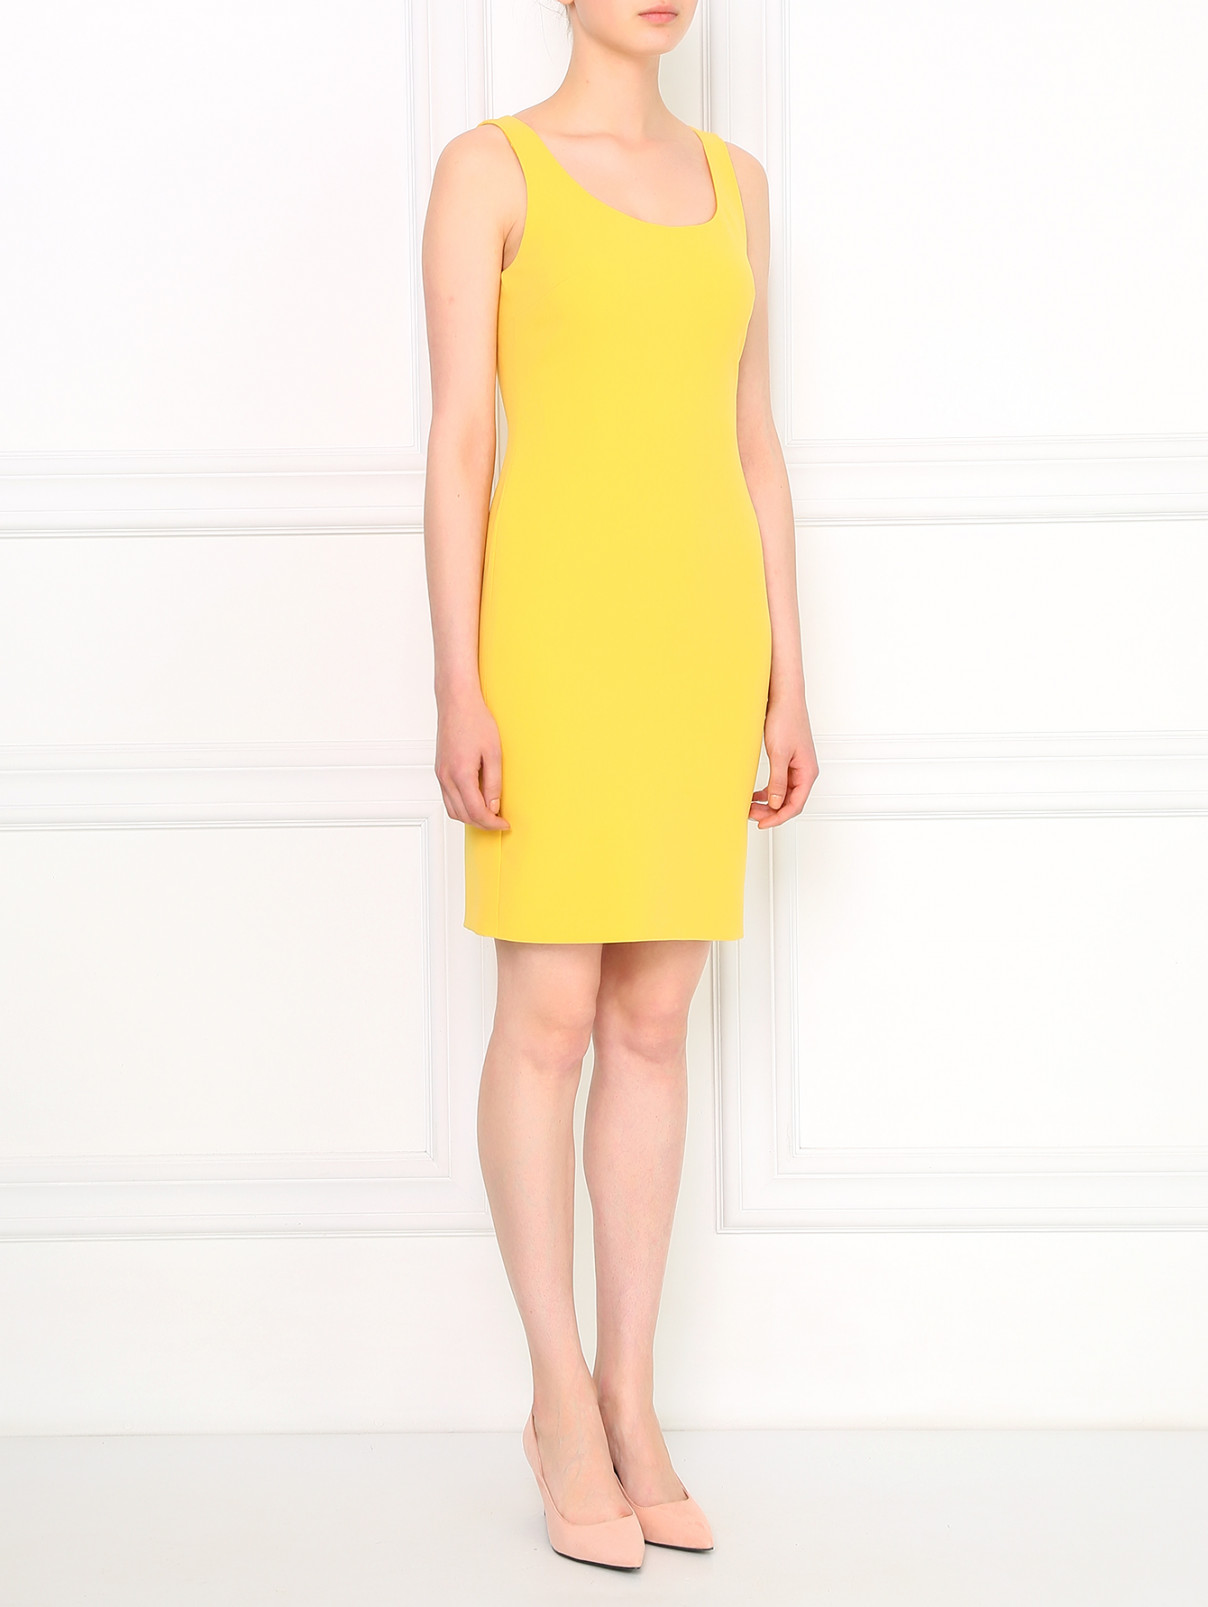 Платье-футляр Moschino Cheap&Chic  –  Модель Общий вид  – Цвет:  Желтый